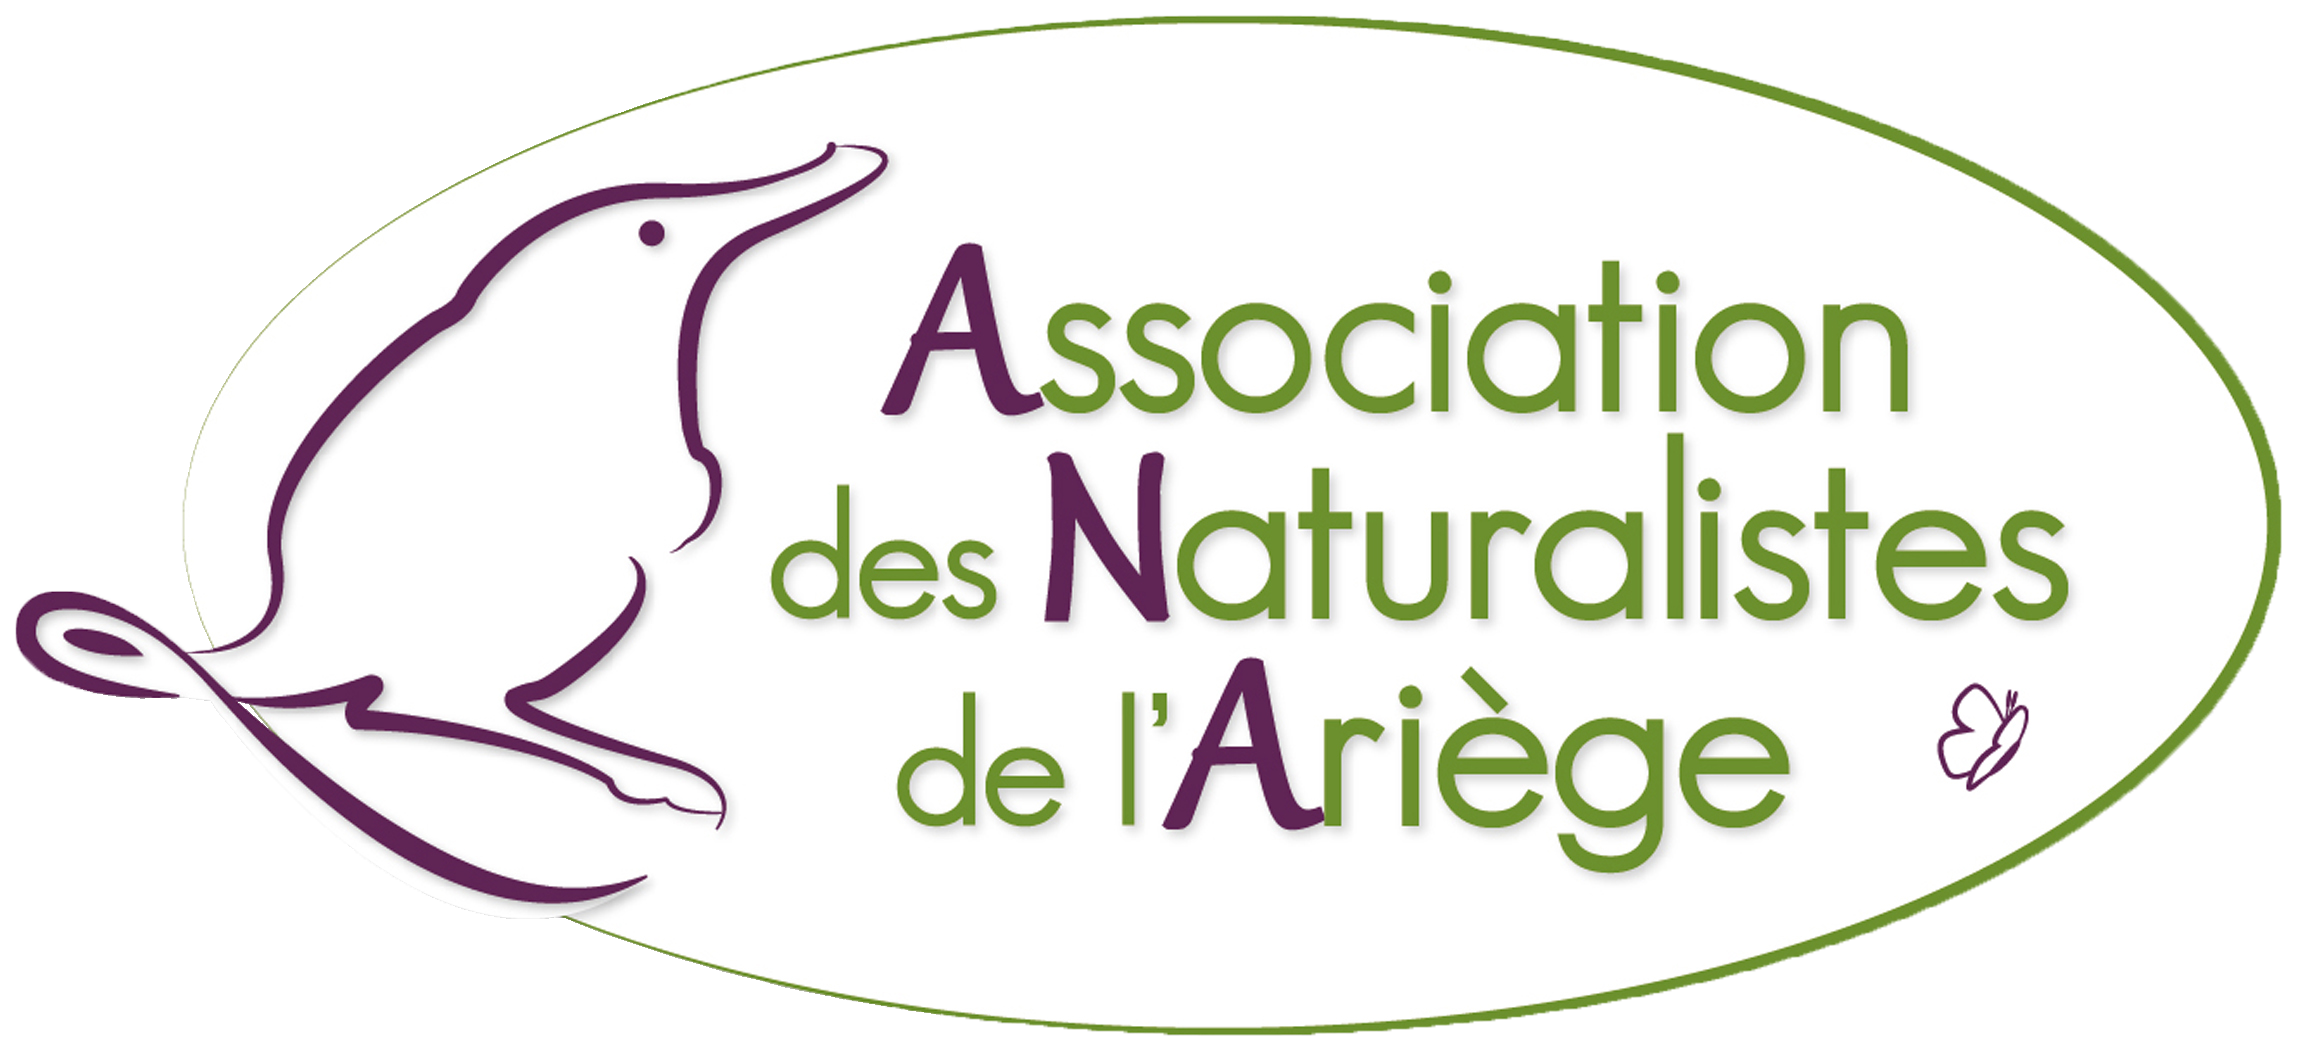 Les naturalistes de l'Ariège